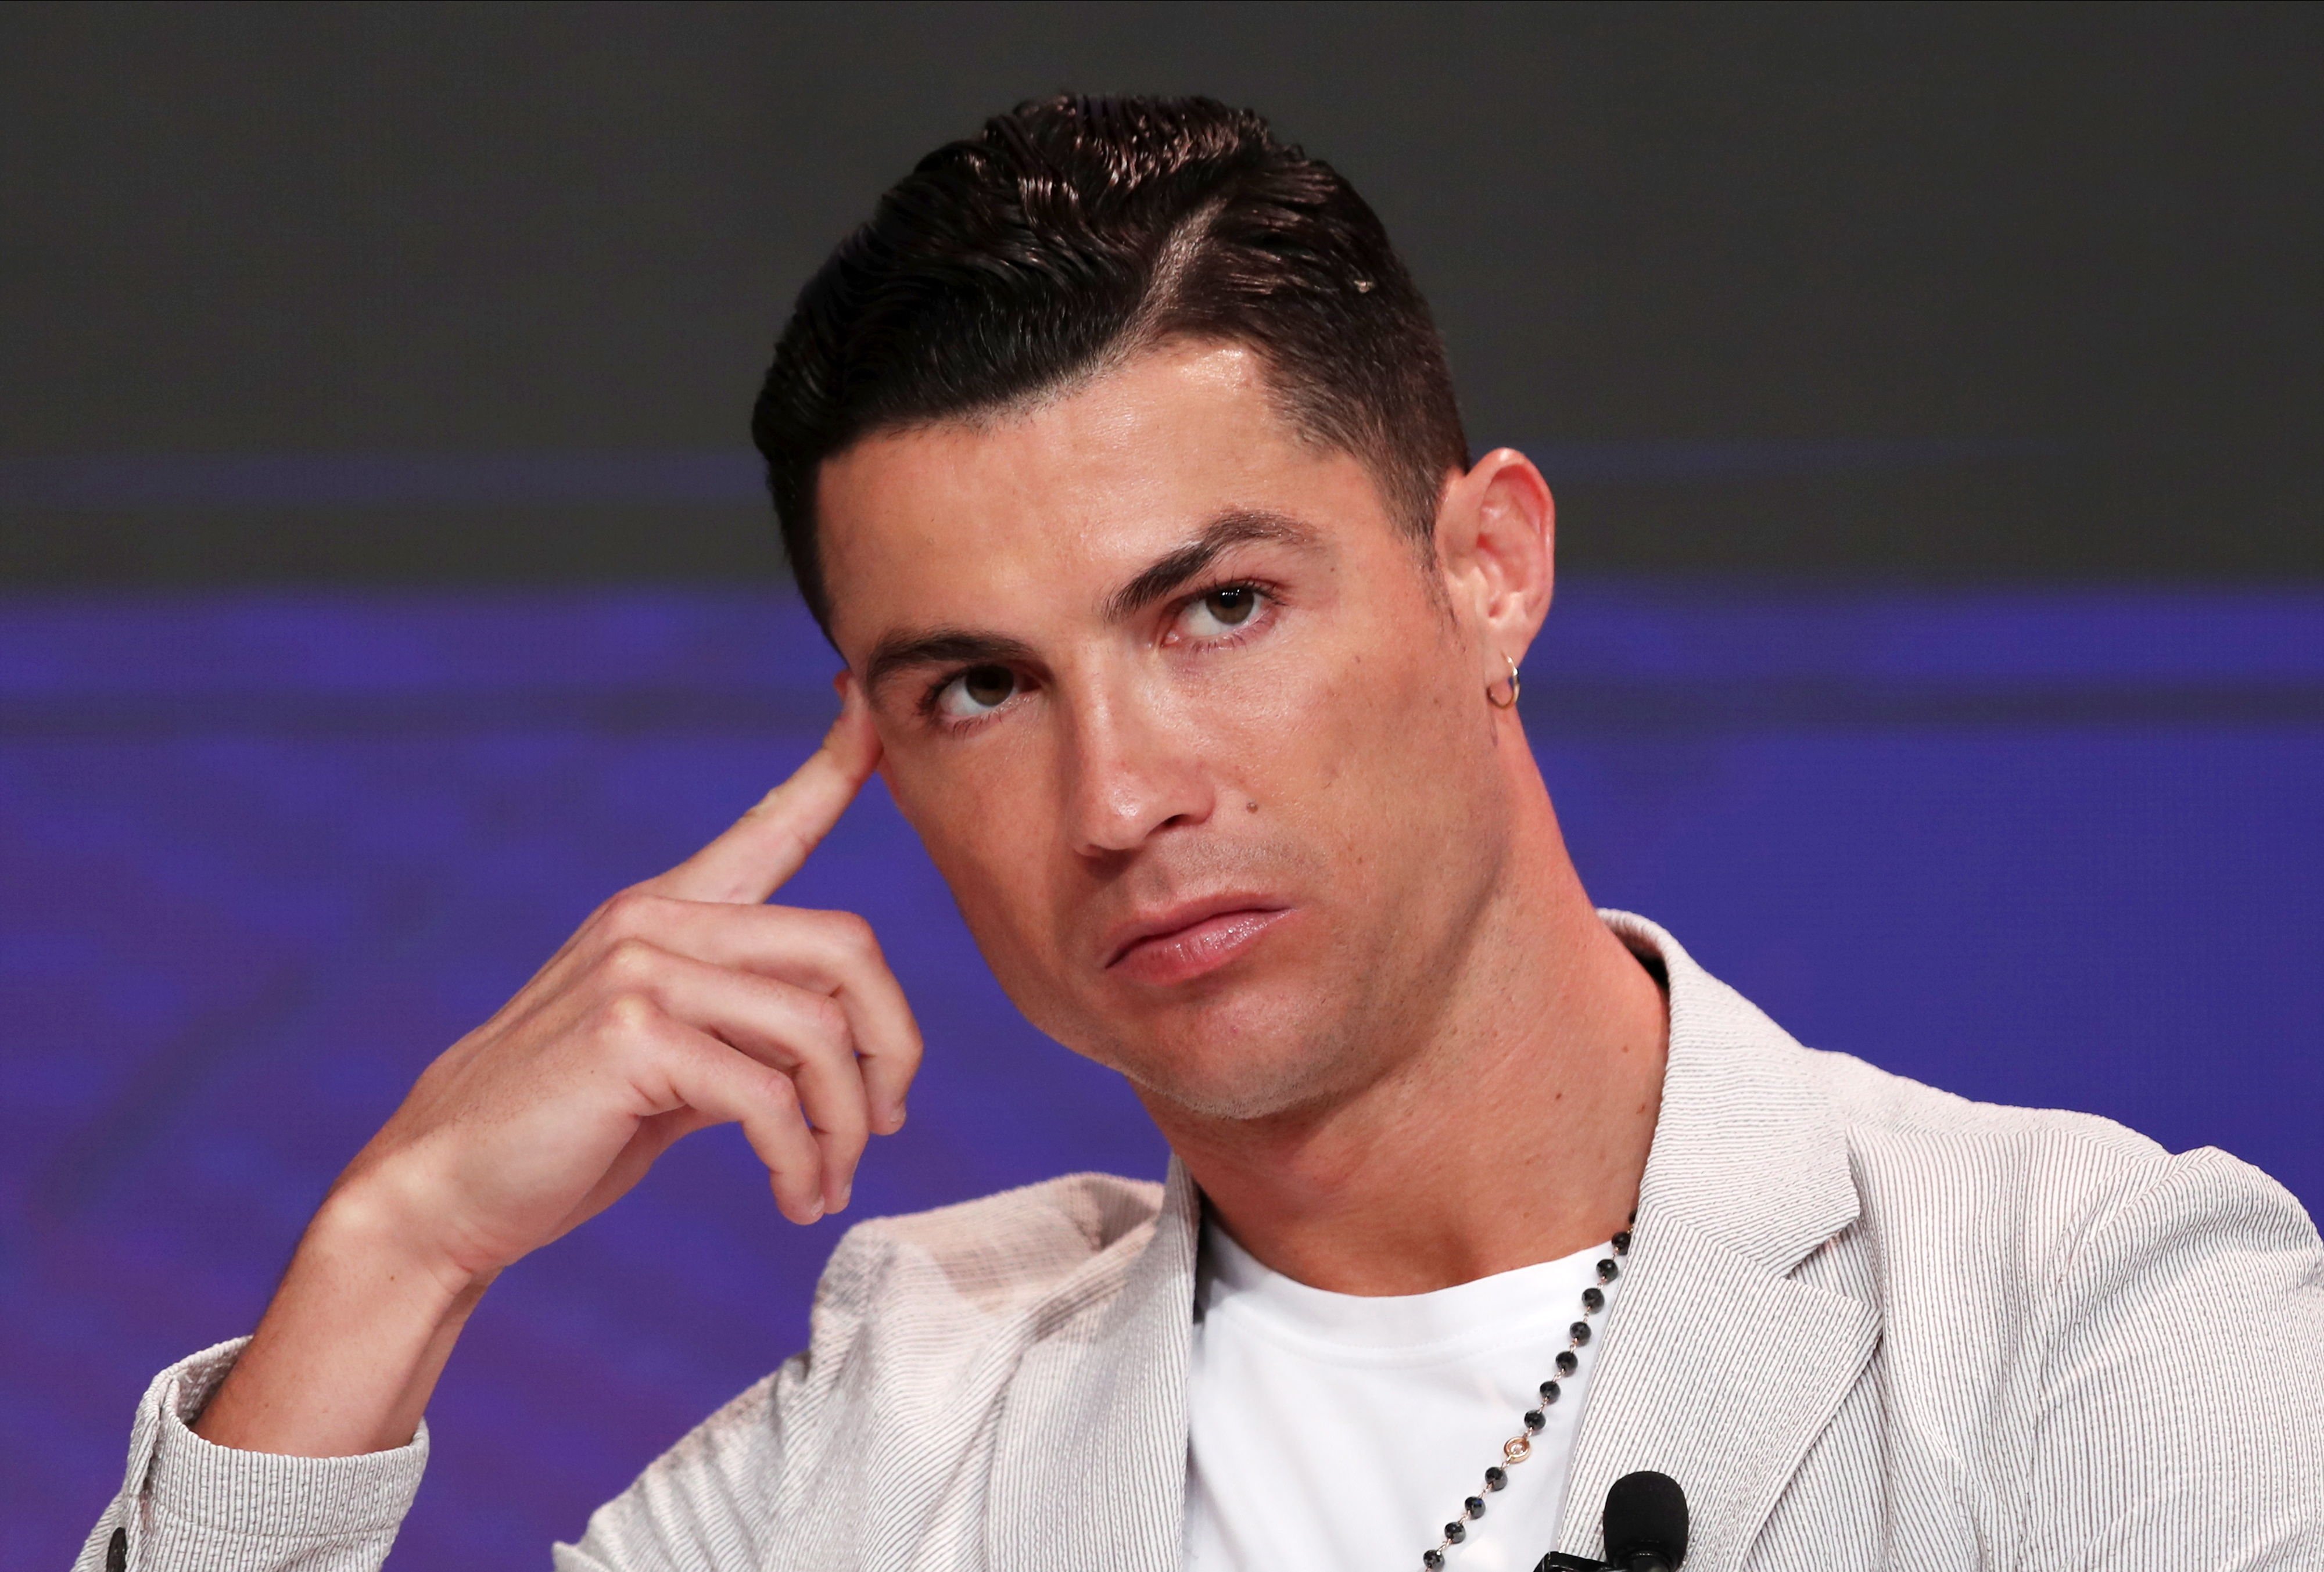 L'exemplar missatge de Cristiano Ronaldo sobre el coronavirus